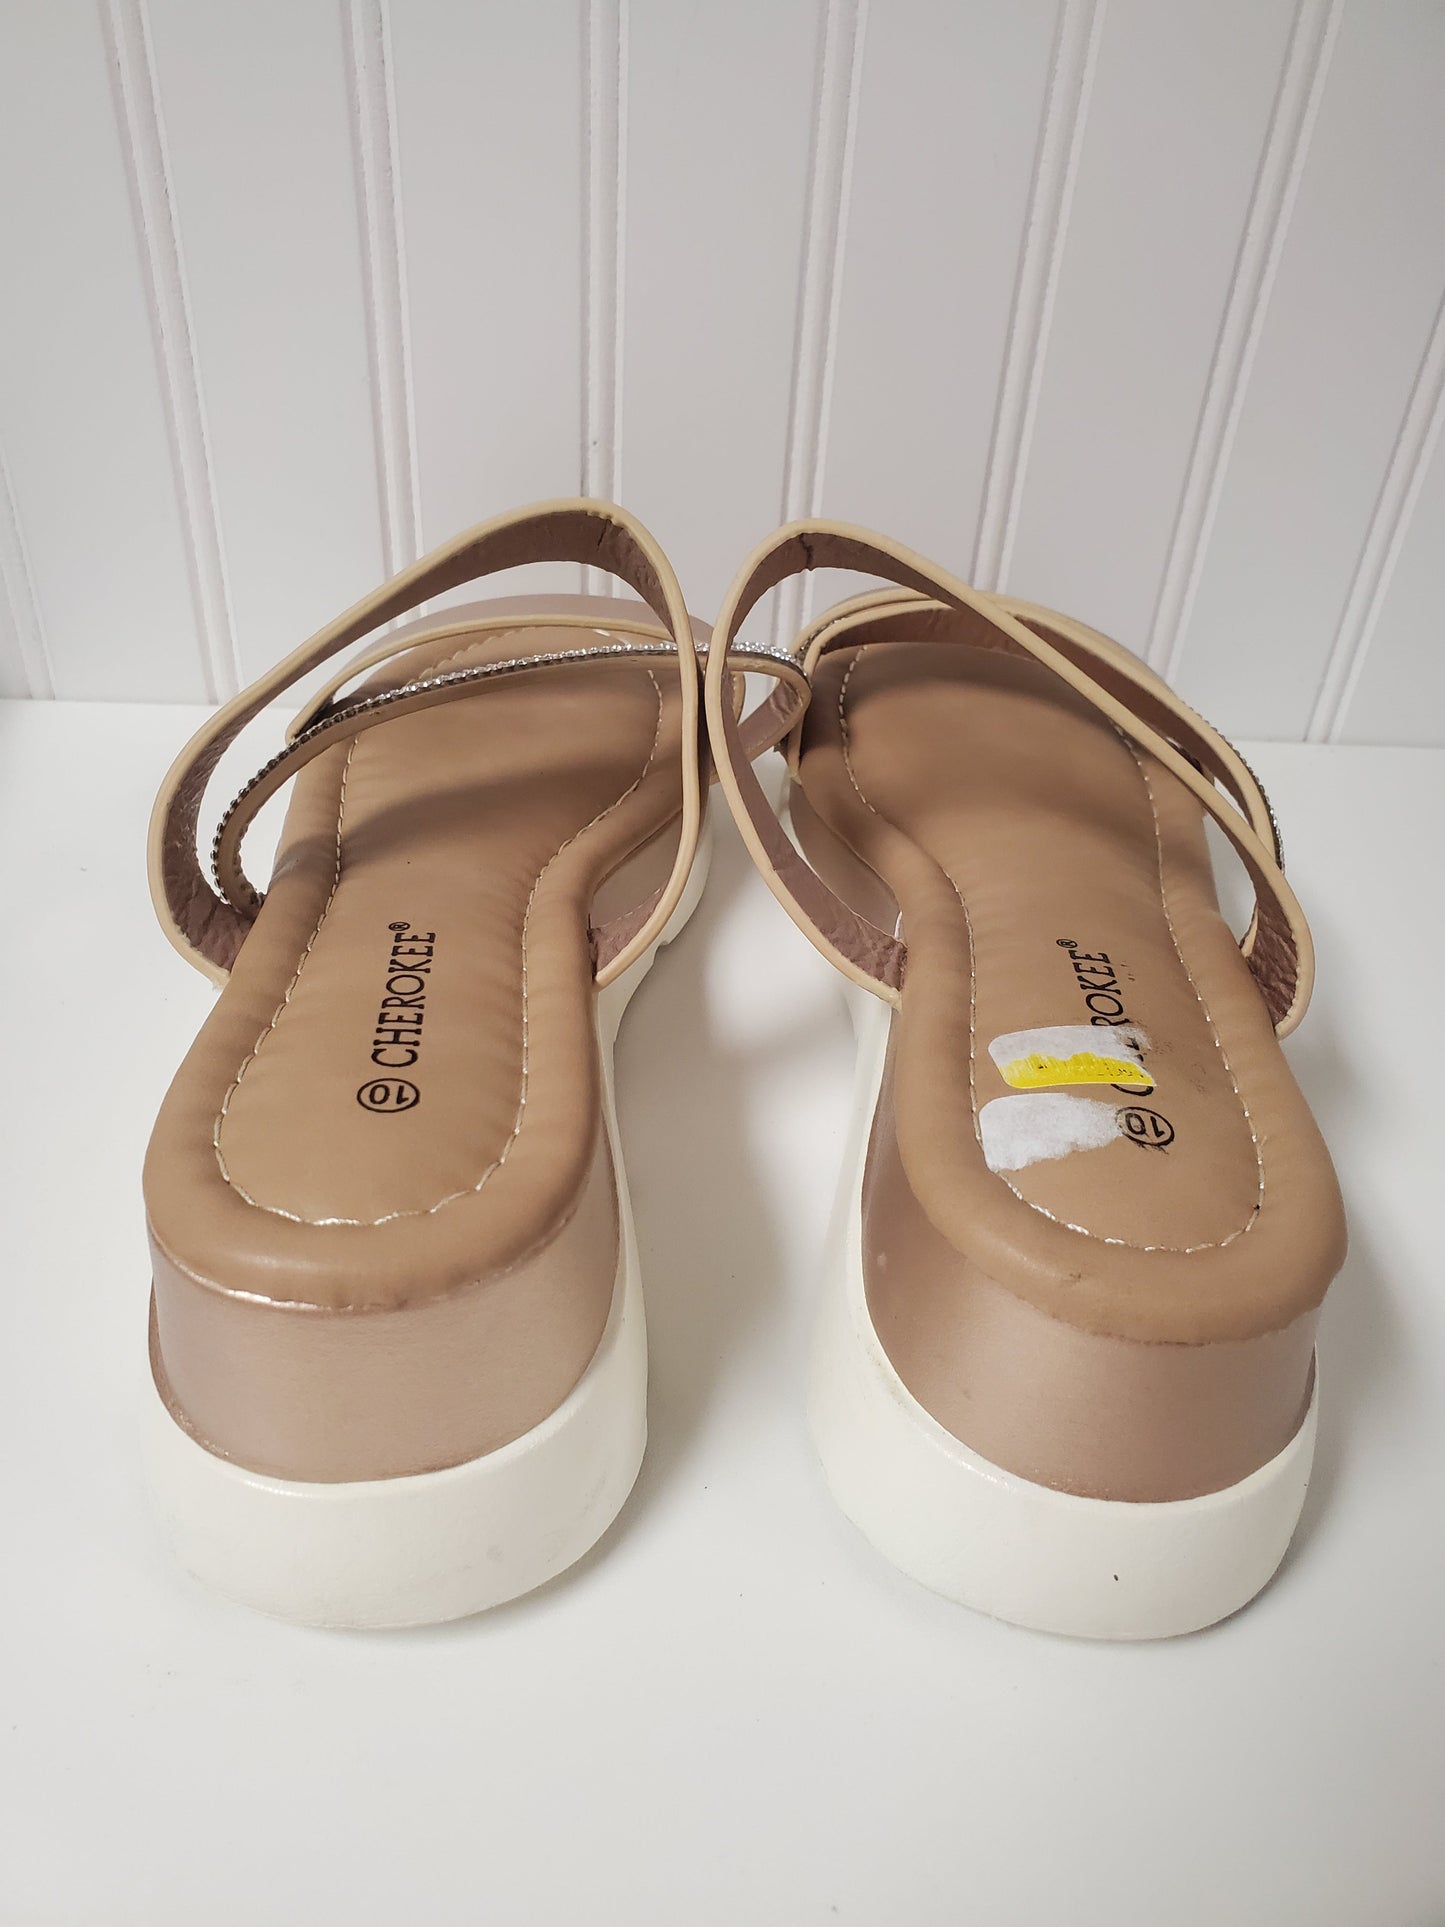 Tan Sandals Heels Platform Cherokee, Size 10